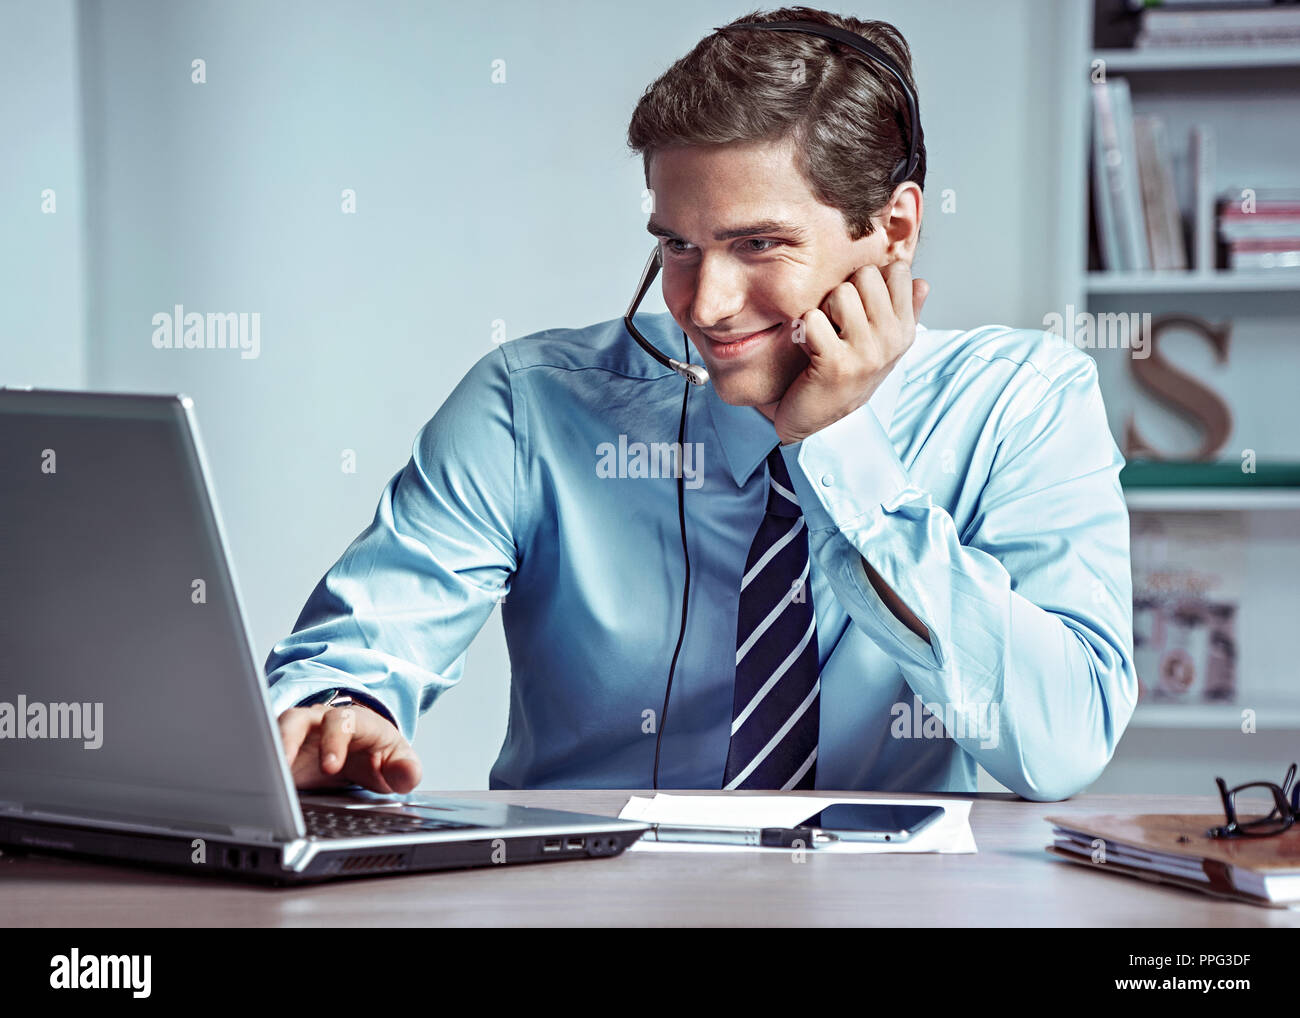 Manager Mann am Telefon zu sprechen und sieht am Laptop. Foto von erfolgreicher Manager arbeiten mit Finanzdaten im Büro. Business Konzept Stockfoto